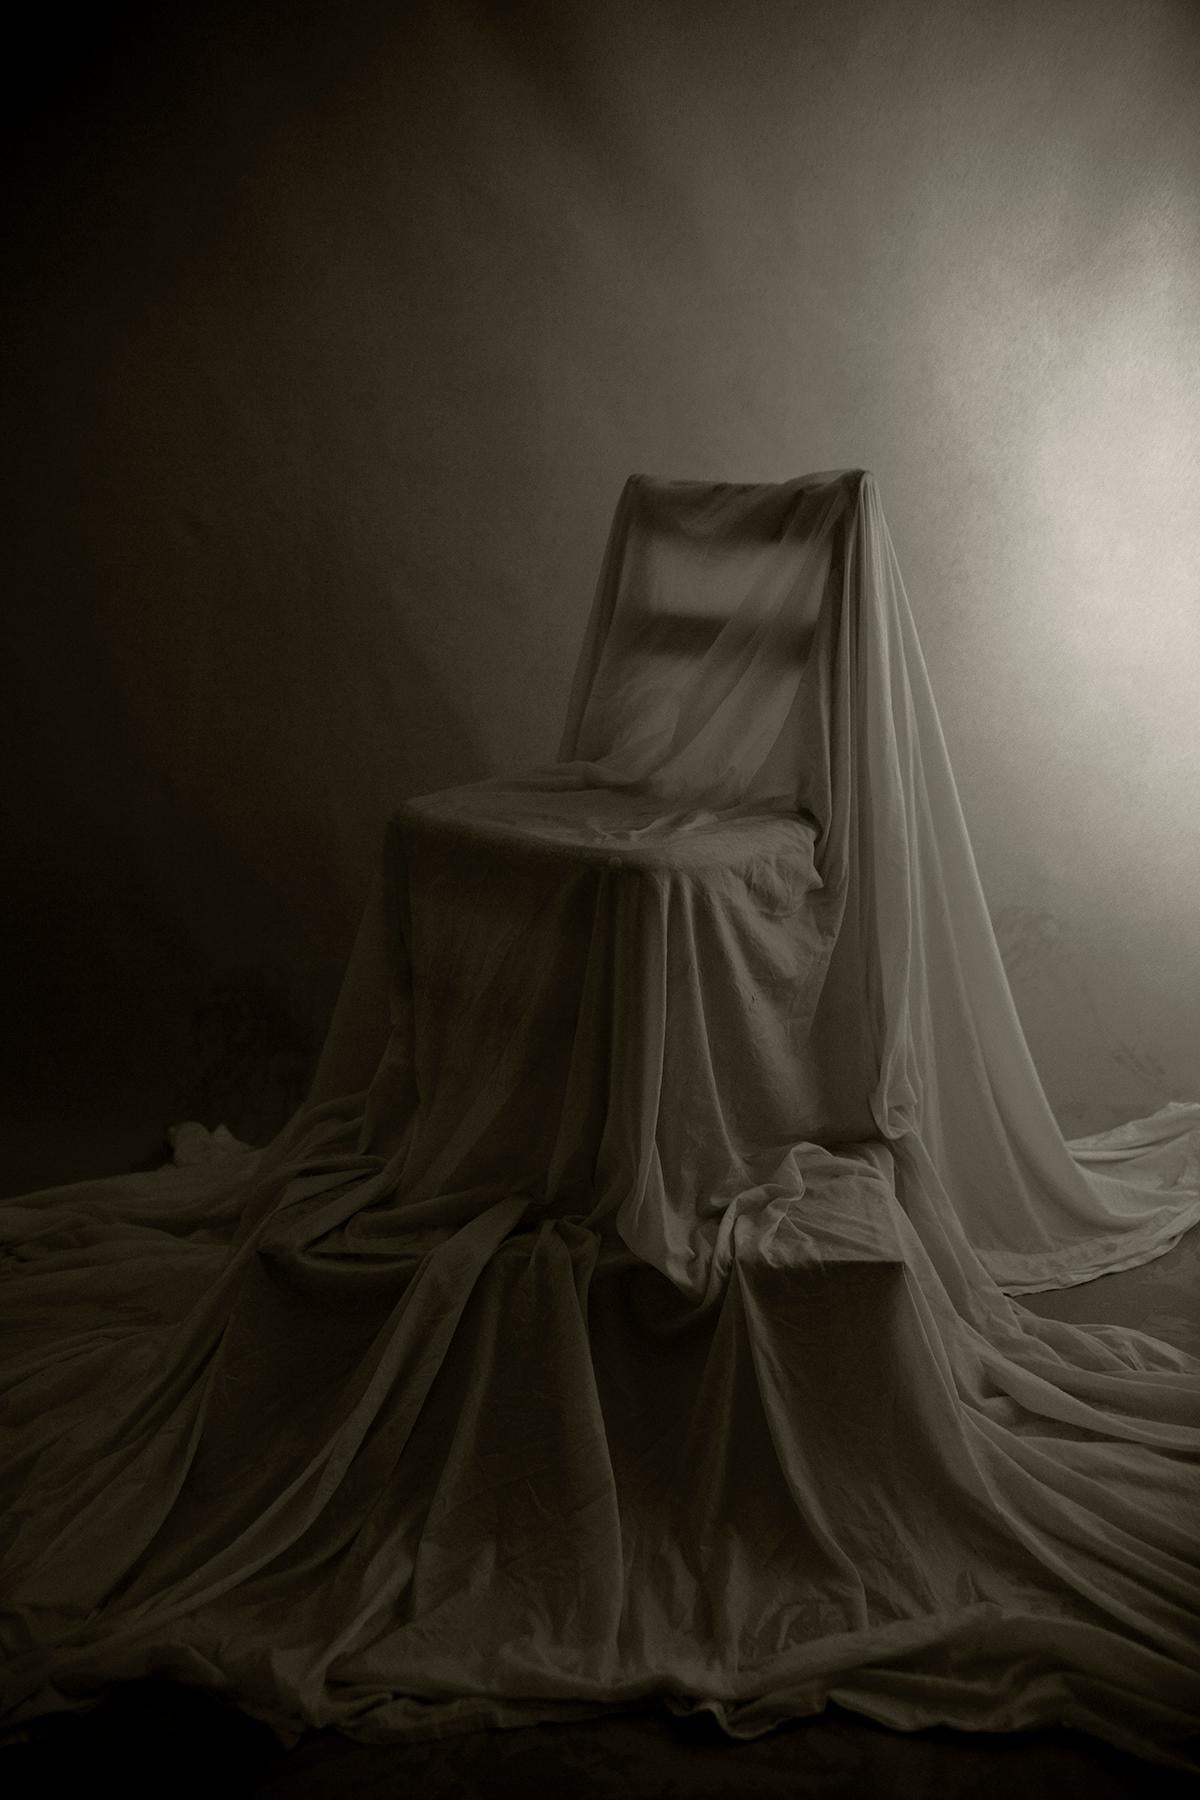 Ricky Cohete Black and White Photograph – Trono. Limitierte Auflage einer Schwarz-Weiß-Fotografie